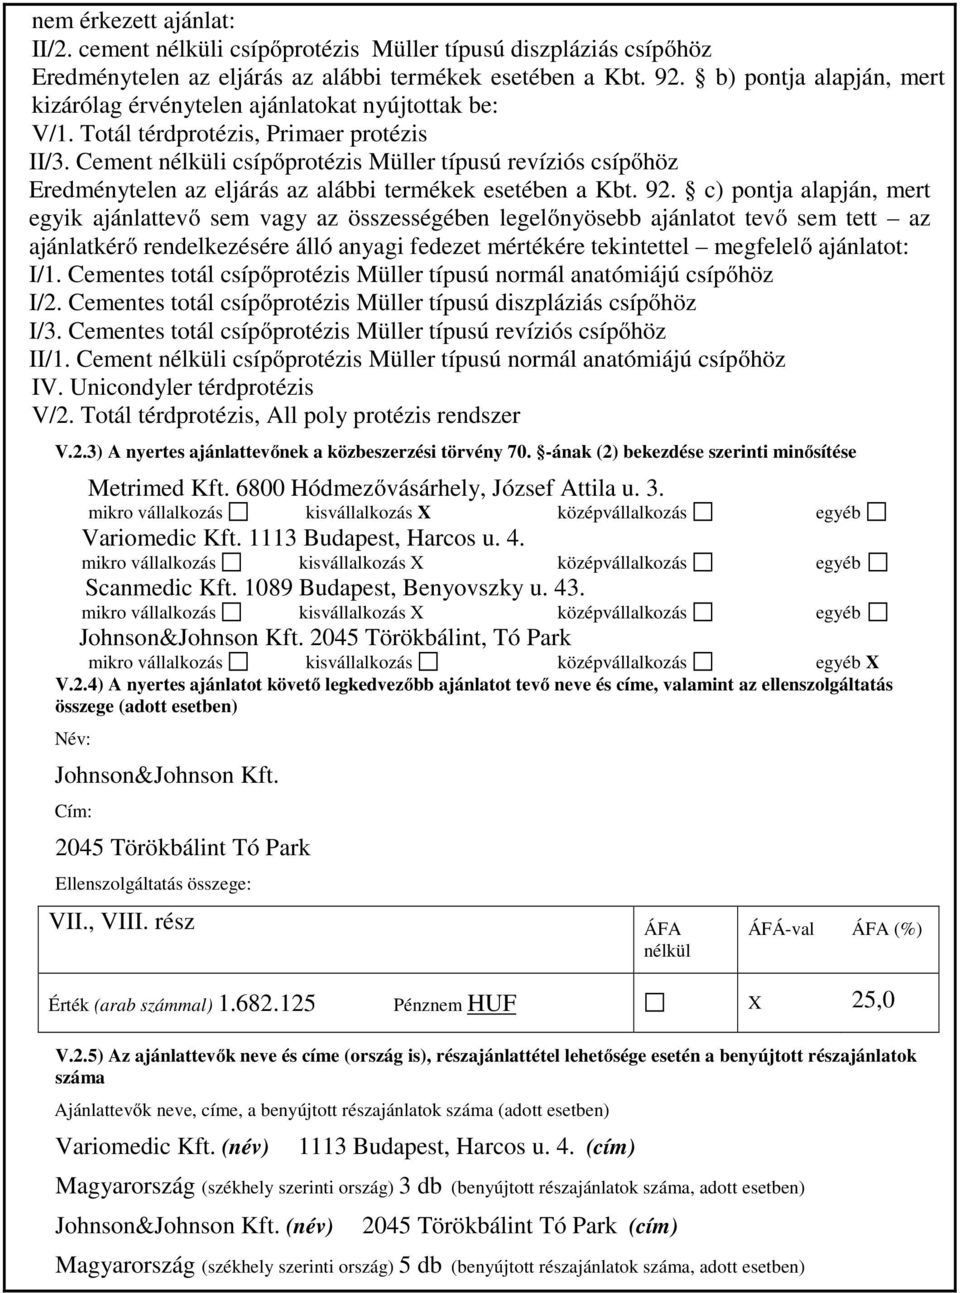 Cement i csípőprotézis Müller típusú revíziós csípőhöz Eredménytelen az eljárás az alábbi termékek esetében a Kbt. 92.